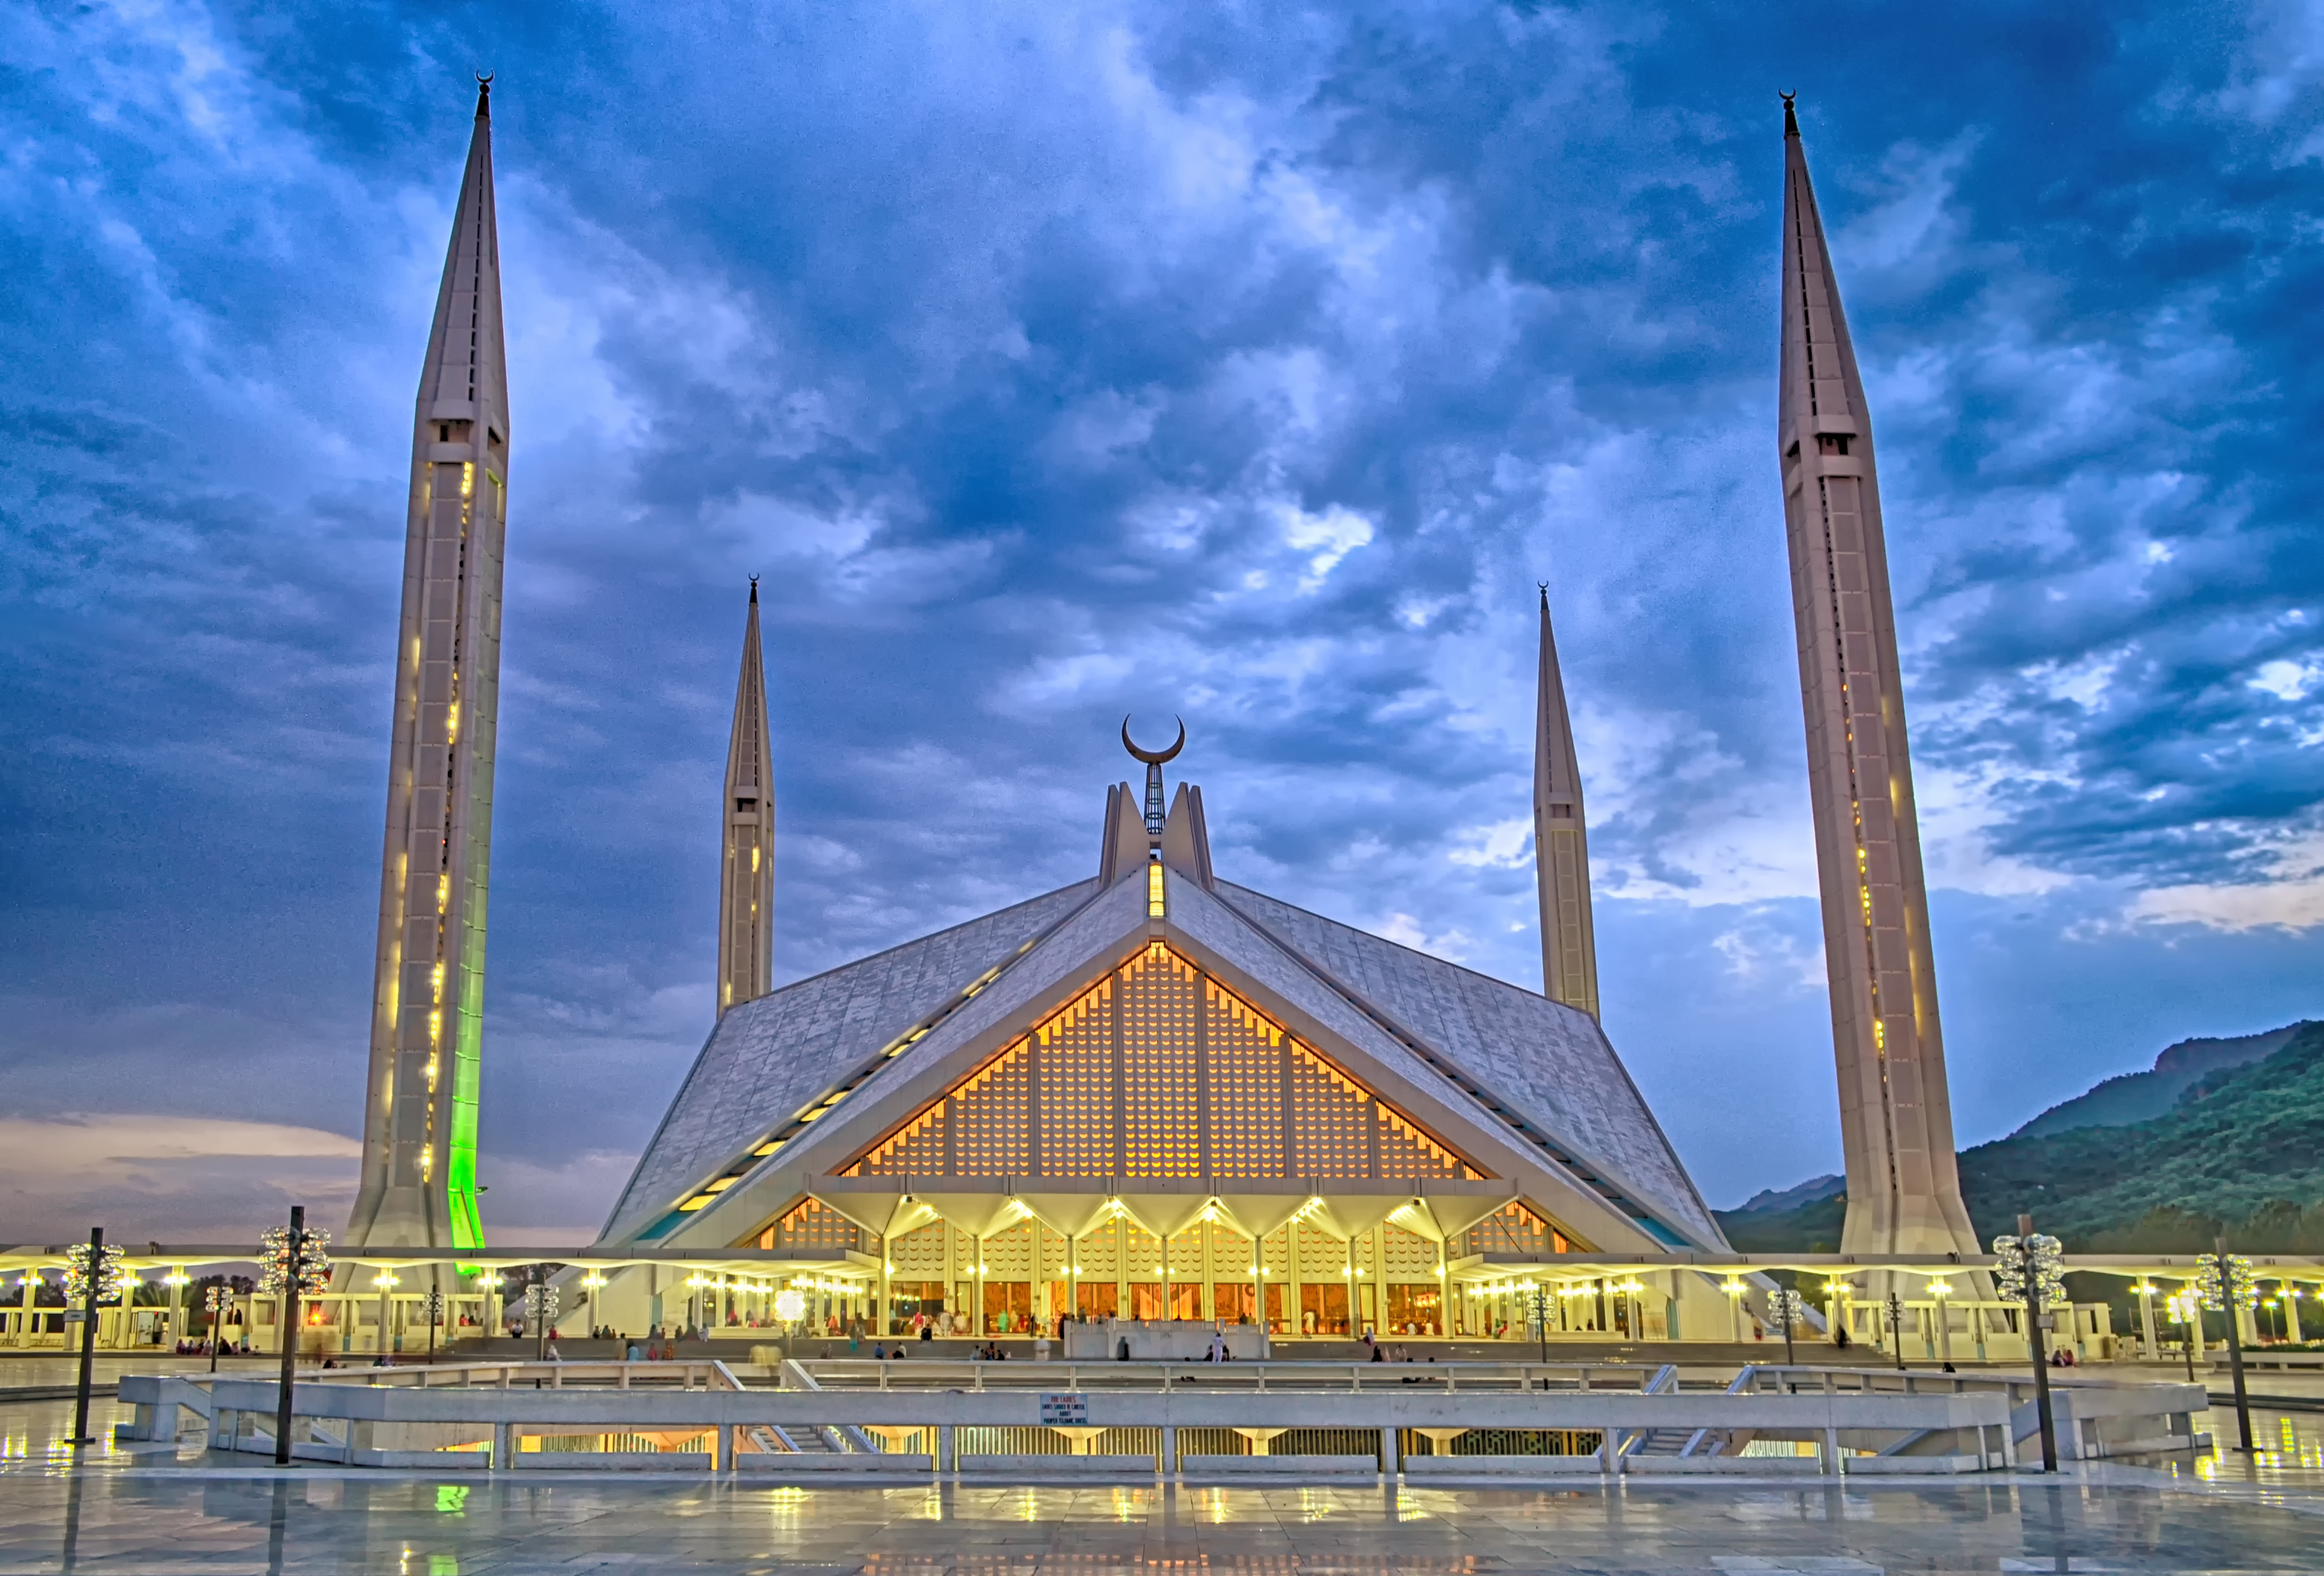 faisal mosque in islamabad, pakistan: faisal mosque   wikipedia